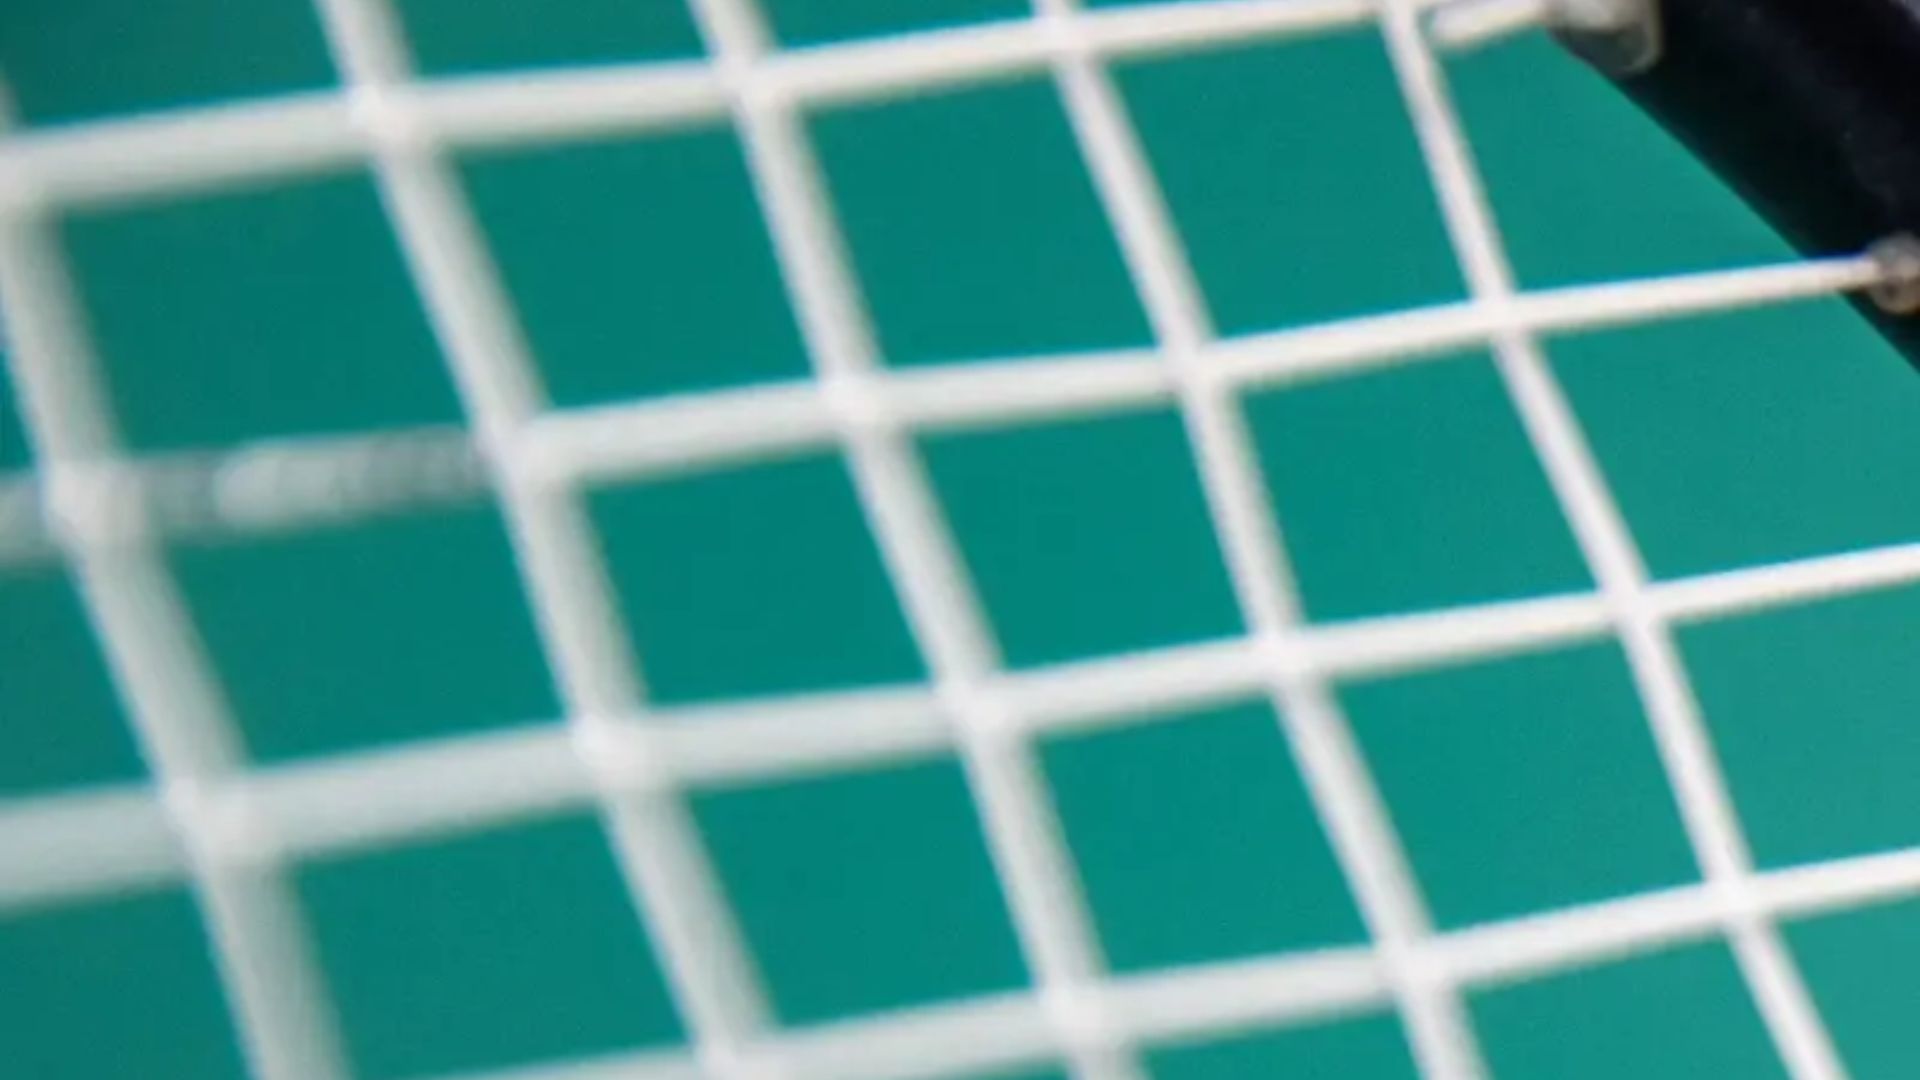 Đọc và hiểu 8 thông số vợt cầu lông và tư vấn chọn vợt cho bạn